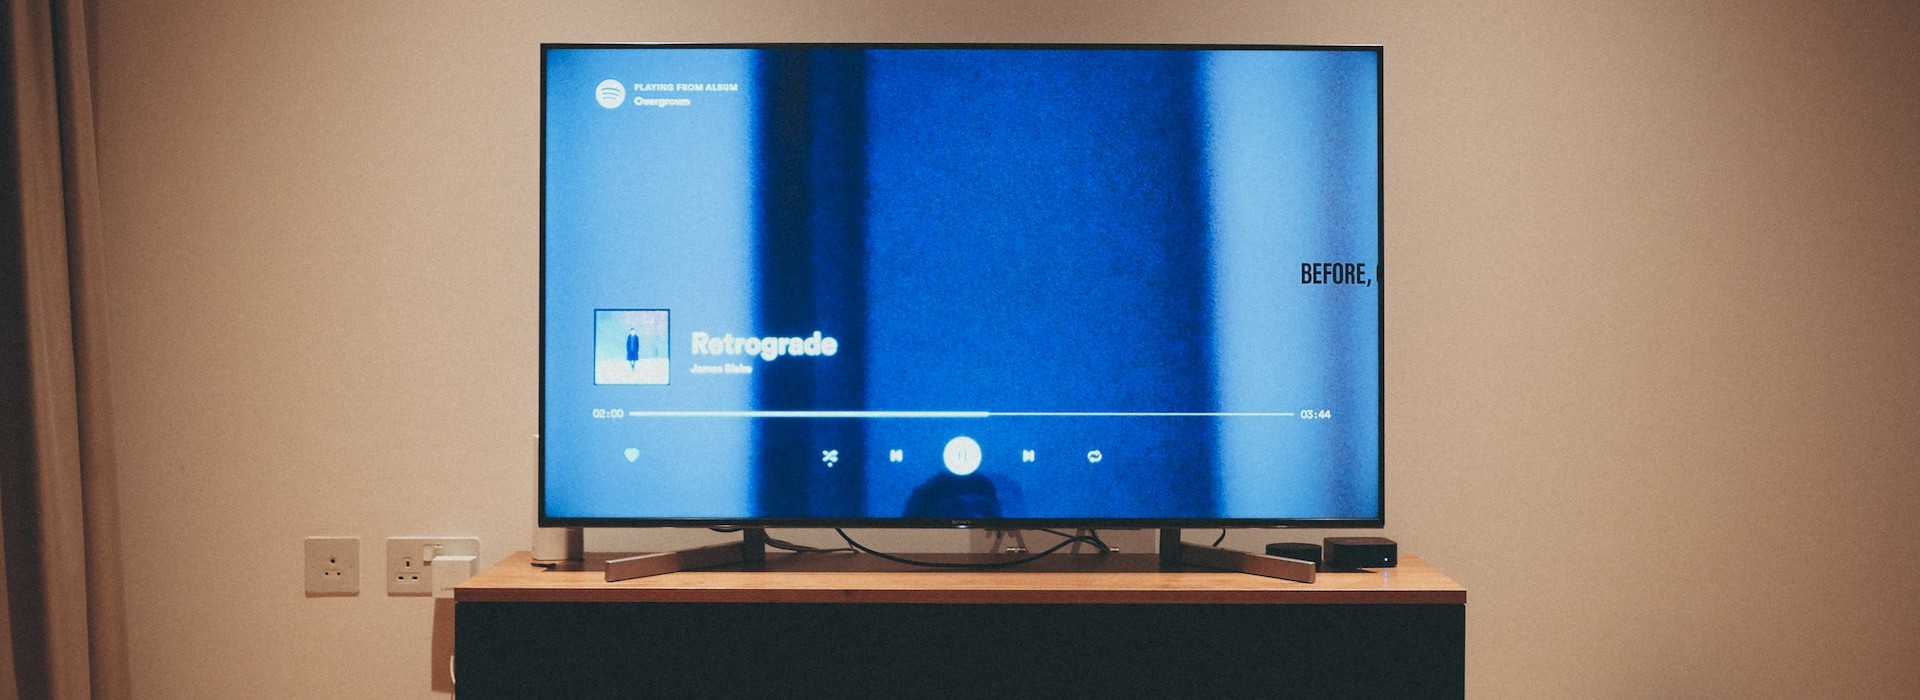 Los 5 mejores dispositivos para convertir su televisor en un smart